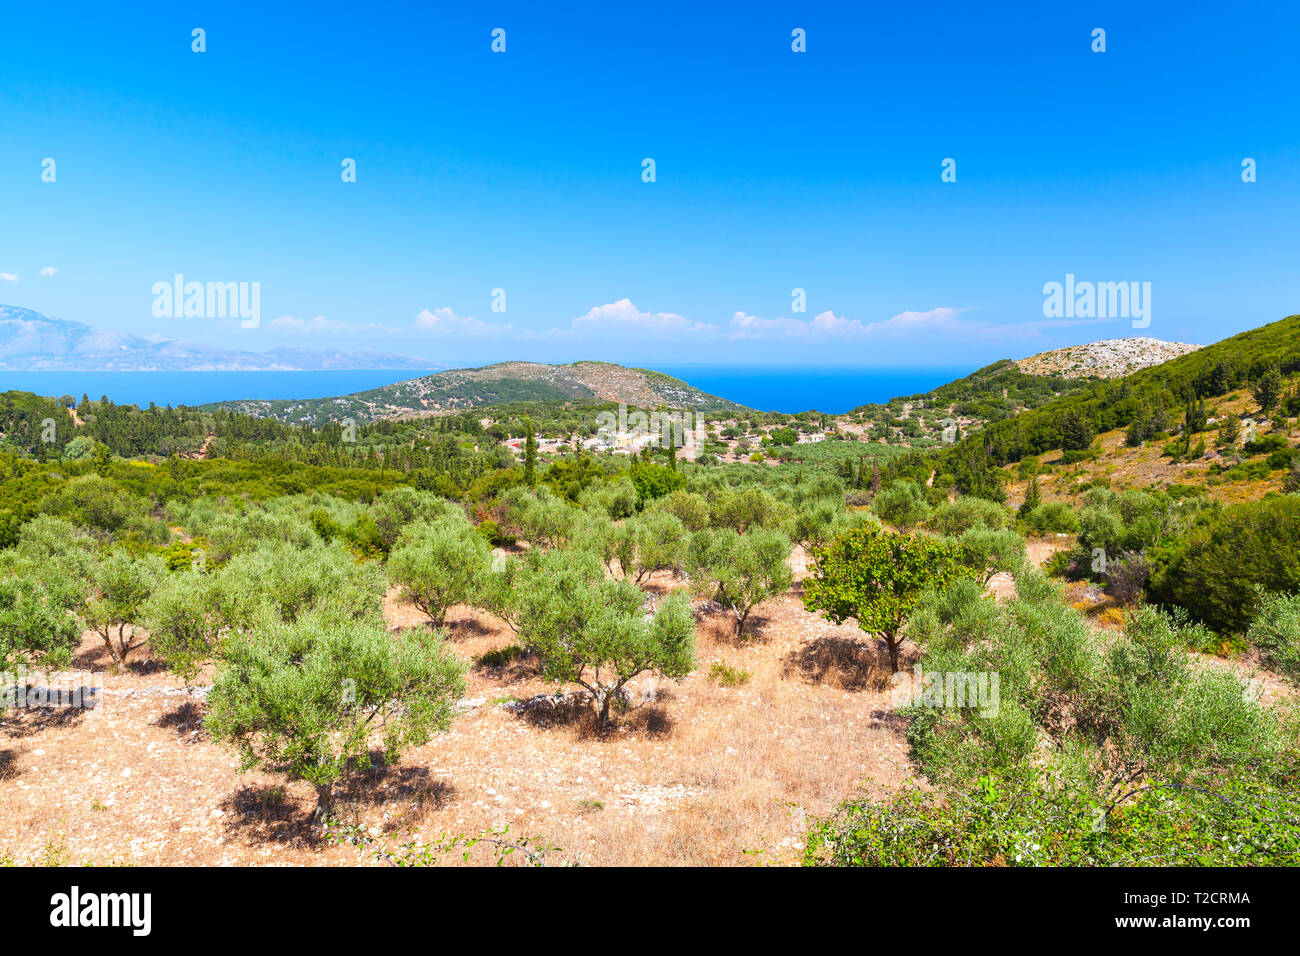 Paysage d'été côtières avec des oliviers. Zakynthos, île grecque dans la mer Ionienne Banque D'Images